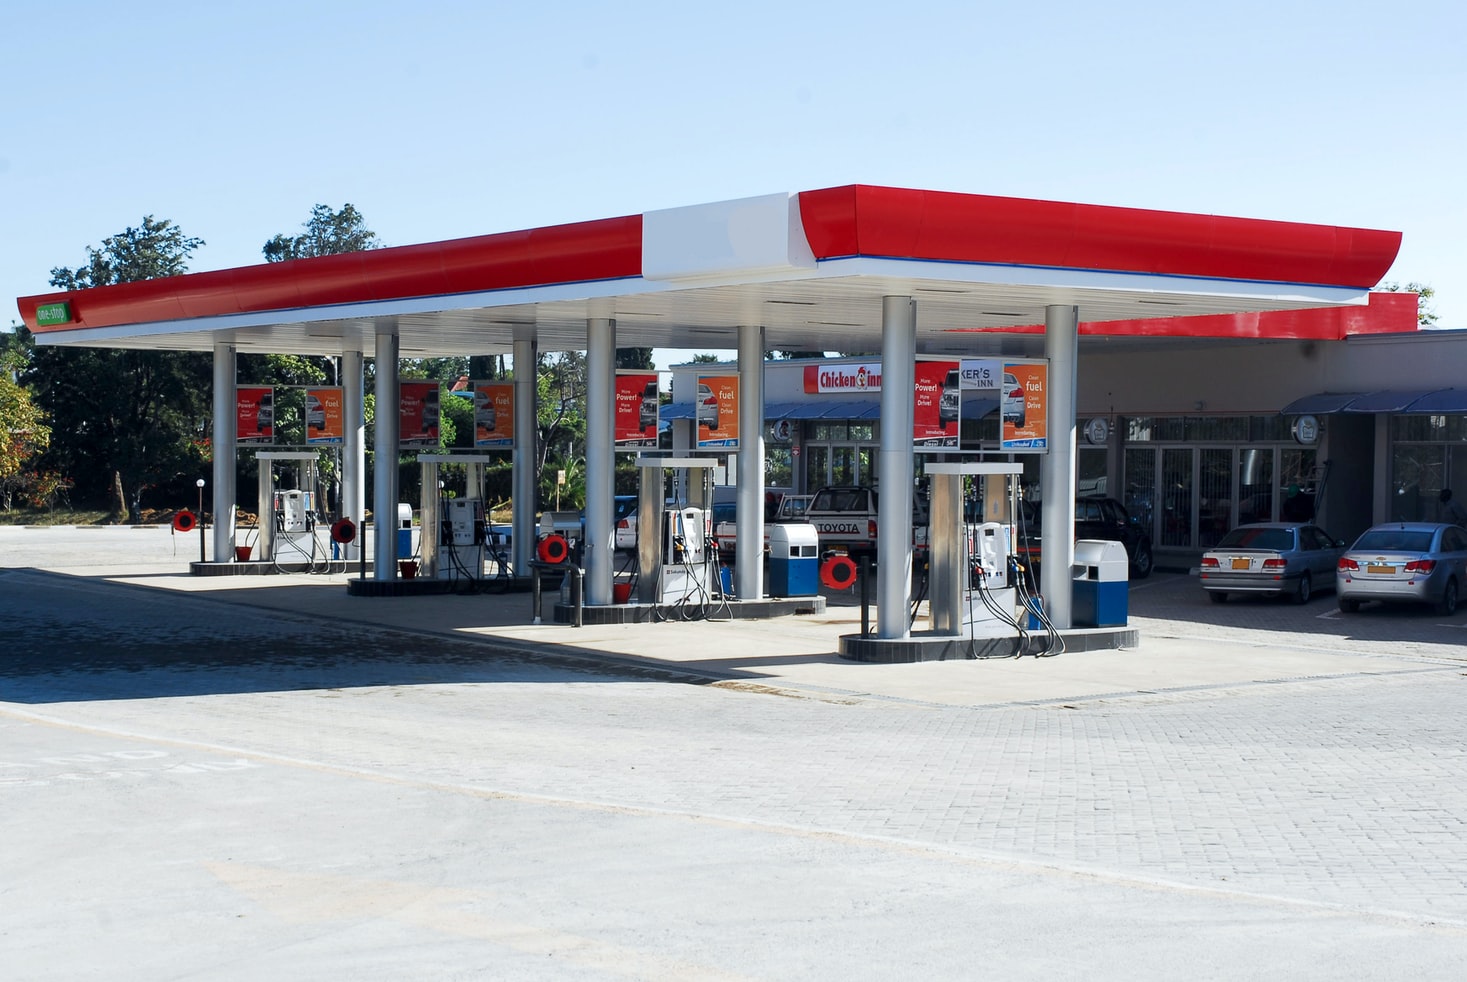 Postos são afetados com preço alto da gasolina. Fonte: Unsplash